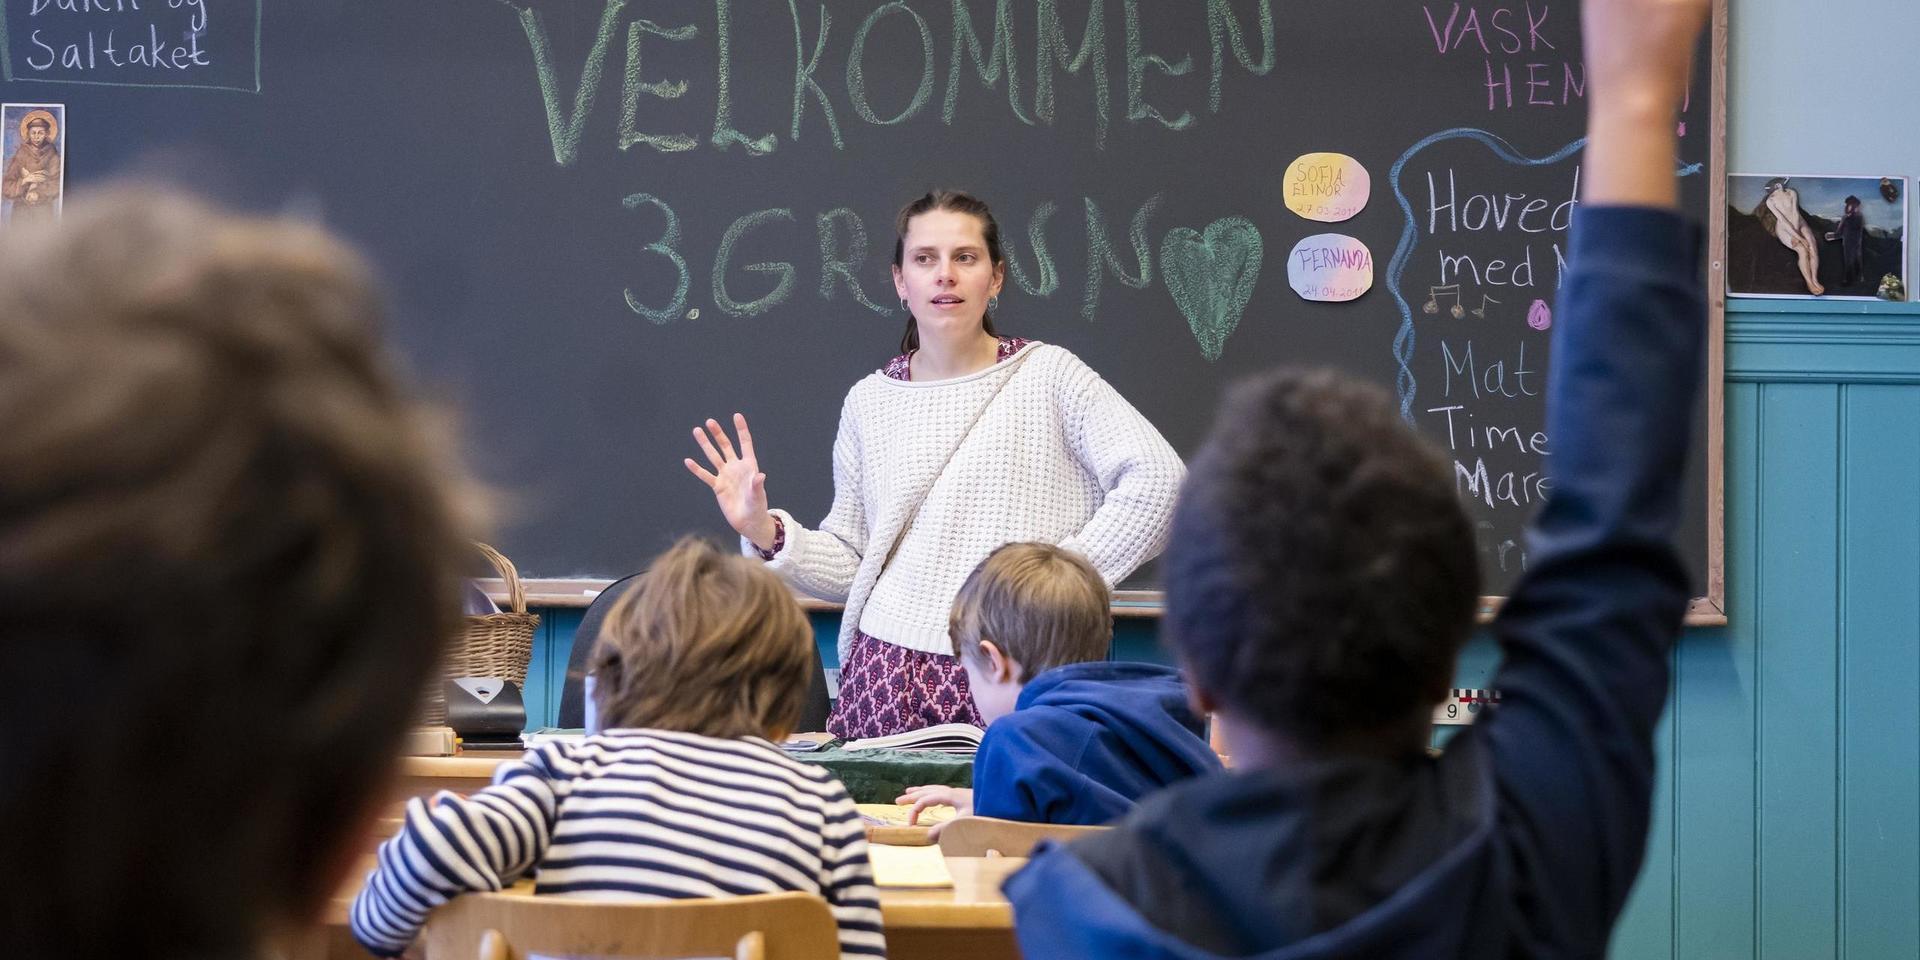 Är det miljön i klassrummet som gör att fler elever får adhd-diagnos? Här en norsk skolklass.